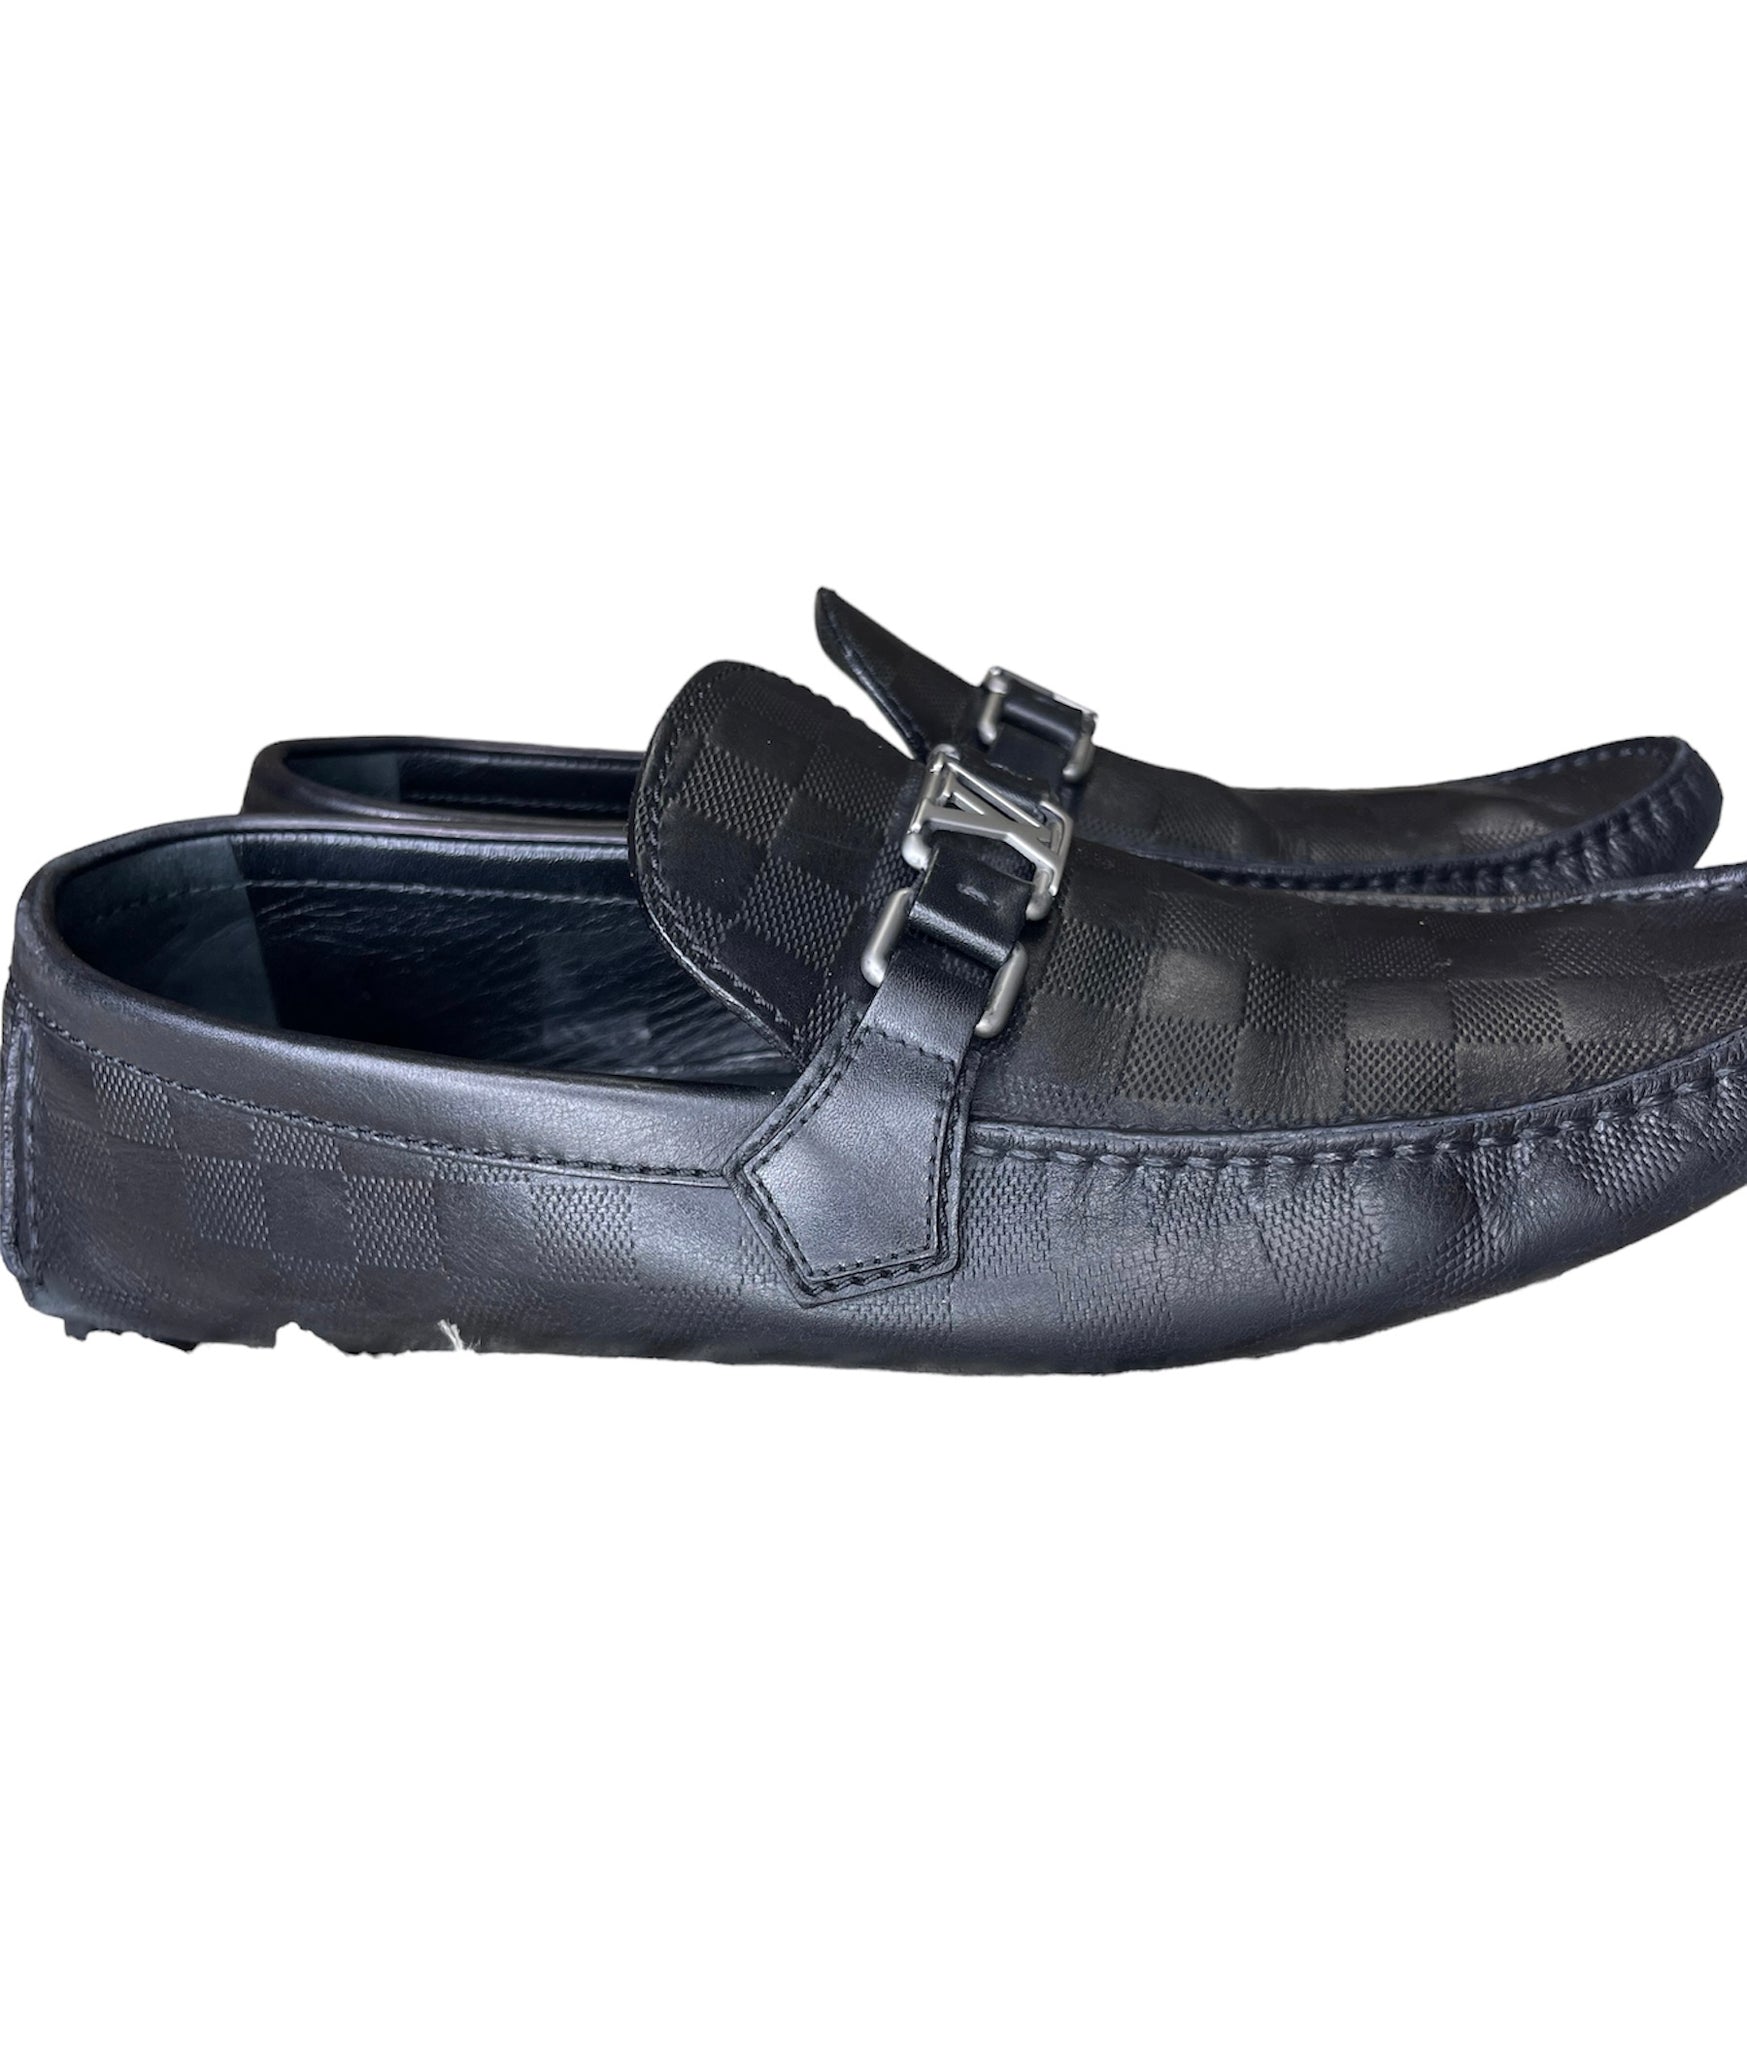 Louis Vuitton Black Men's Loafers – thankunext.us